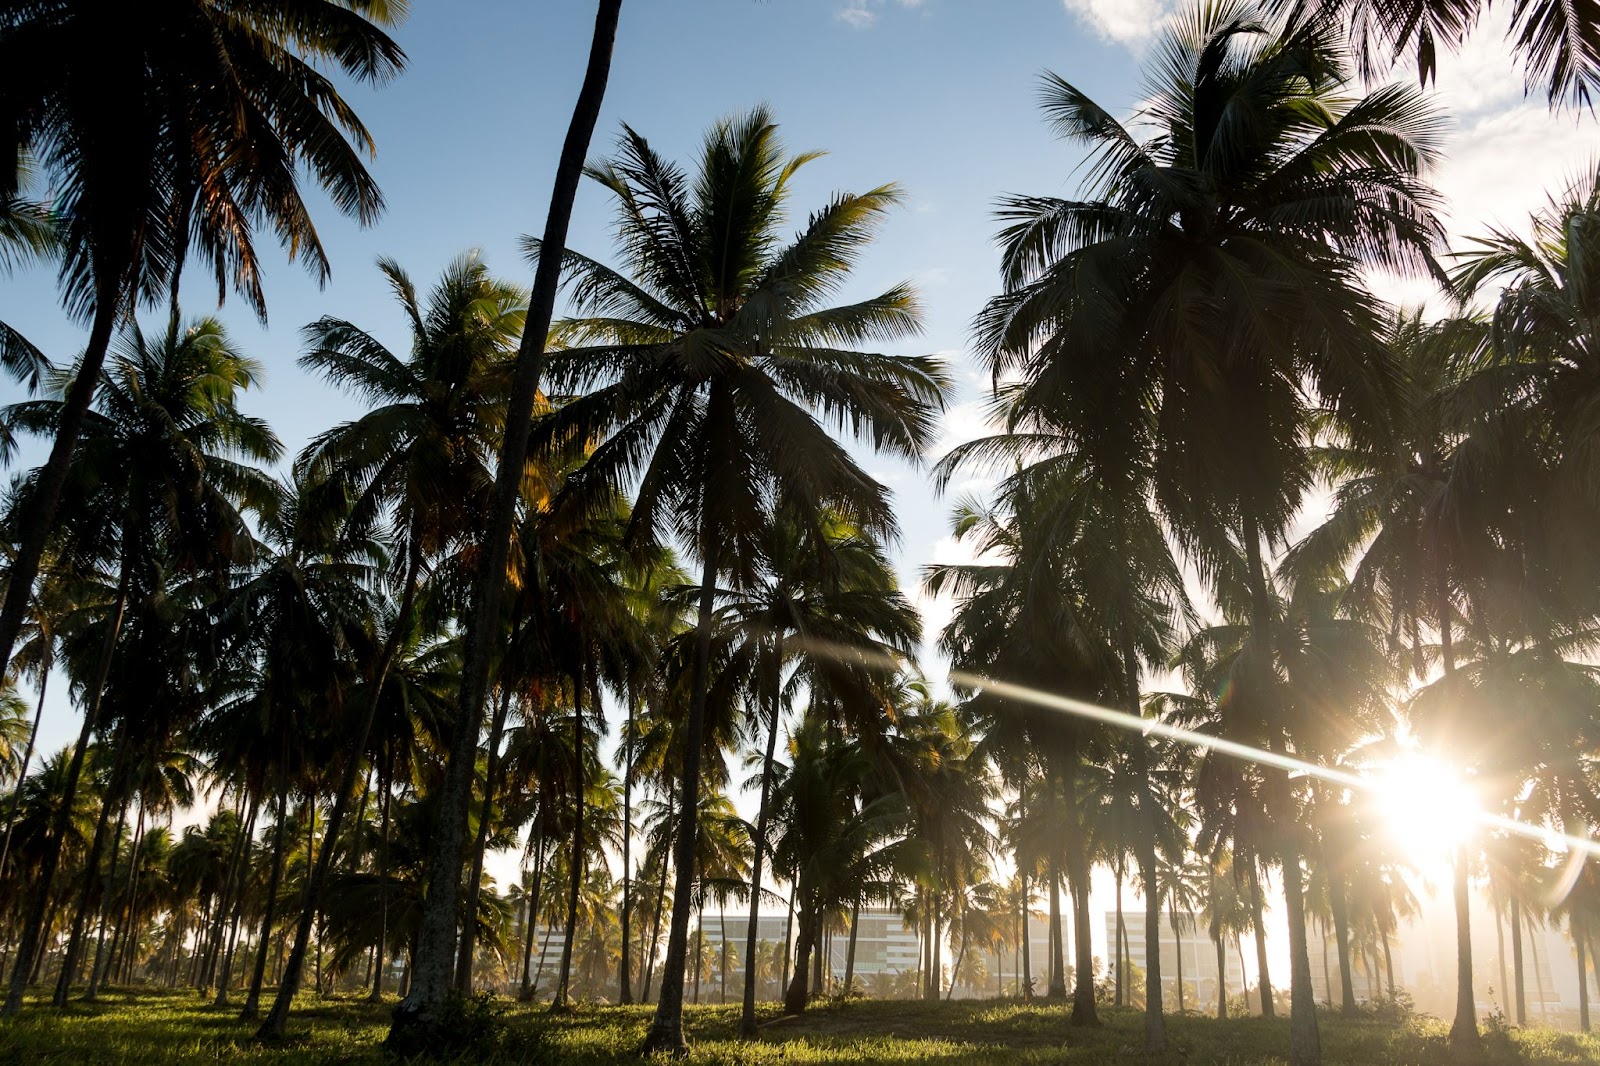 Entardecer em uma das praias de Jaboatão dos Guararapes. Diversas palmeiras contra o sol, projetando sombras no gramado em que se encontram